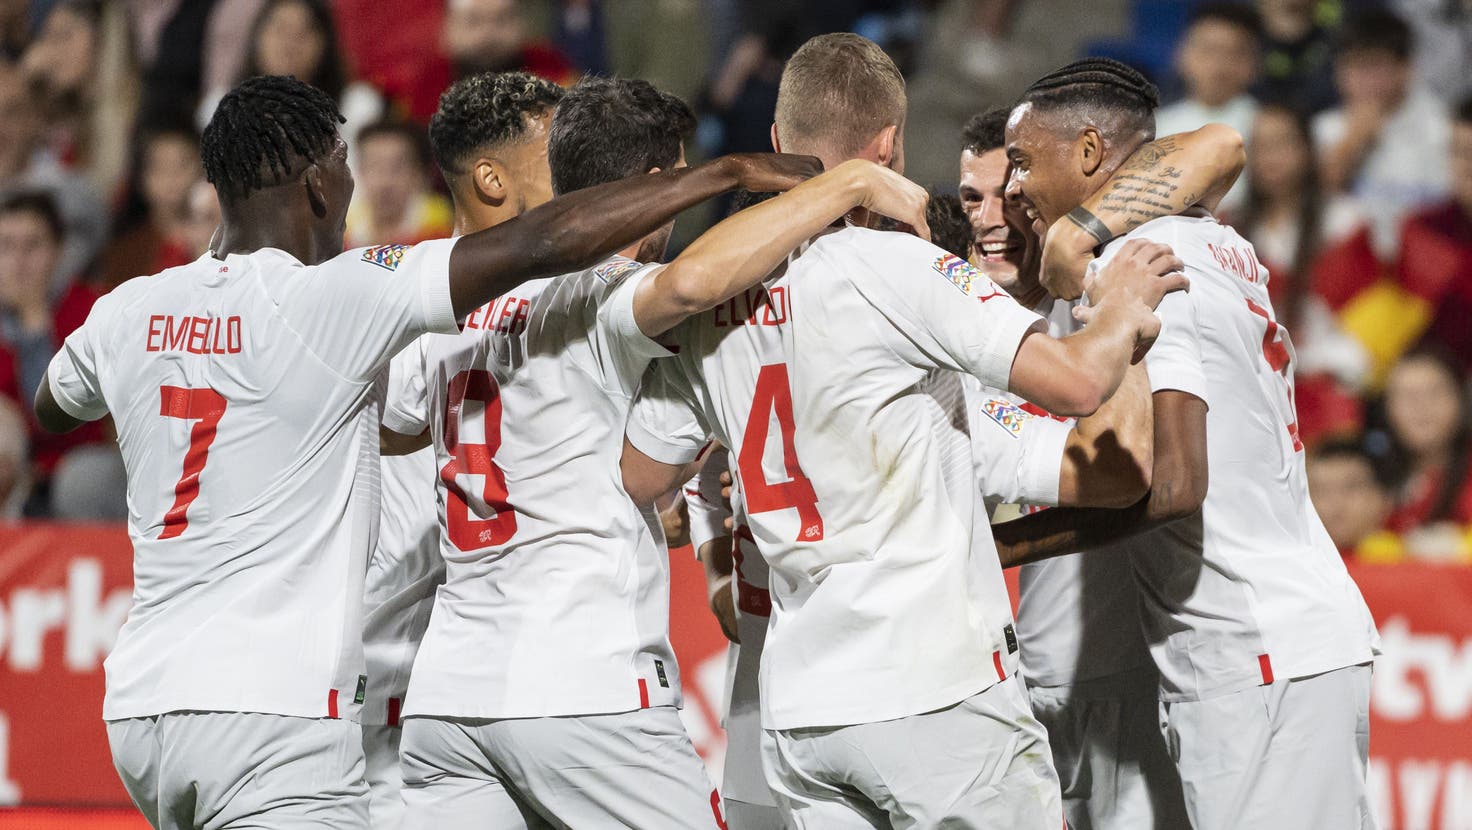 Jetzt live: Embolo bringt die Schweiz gegen Spanien 2:1 in Führung